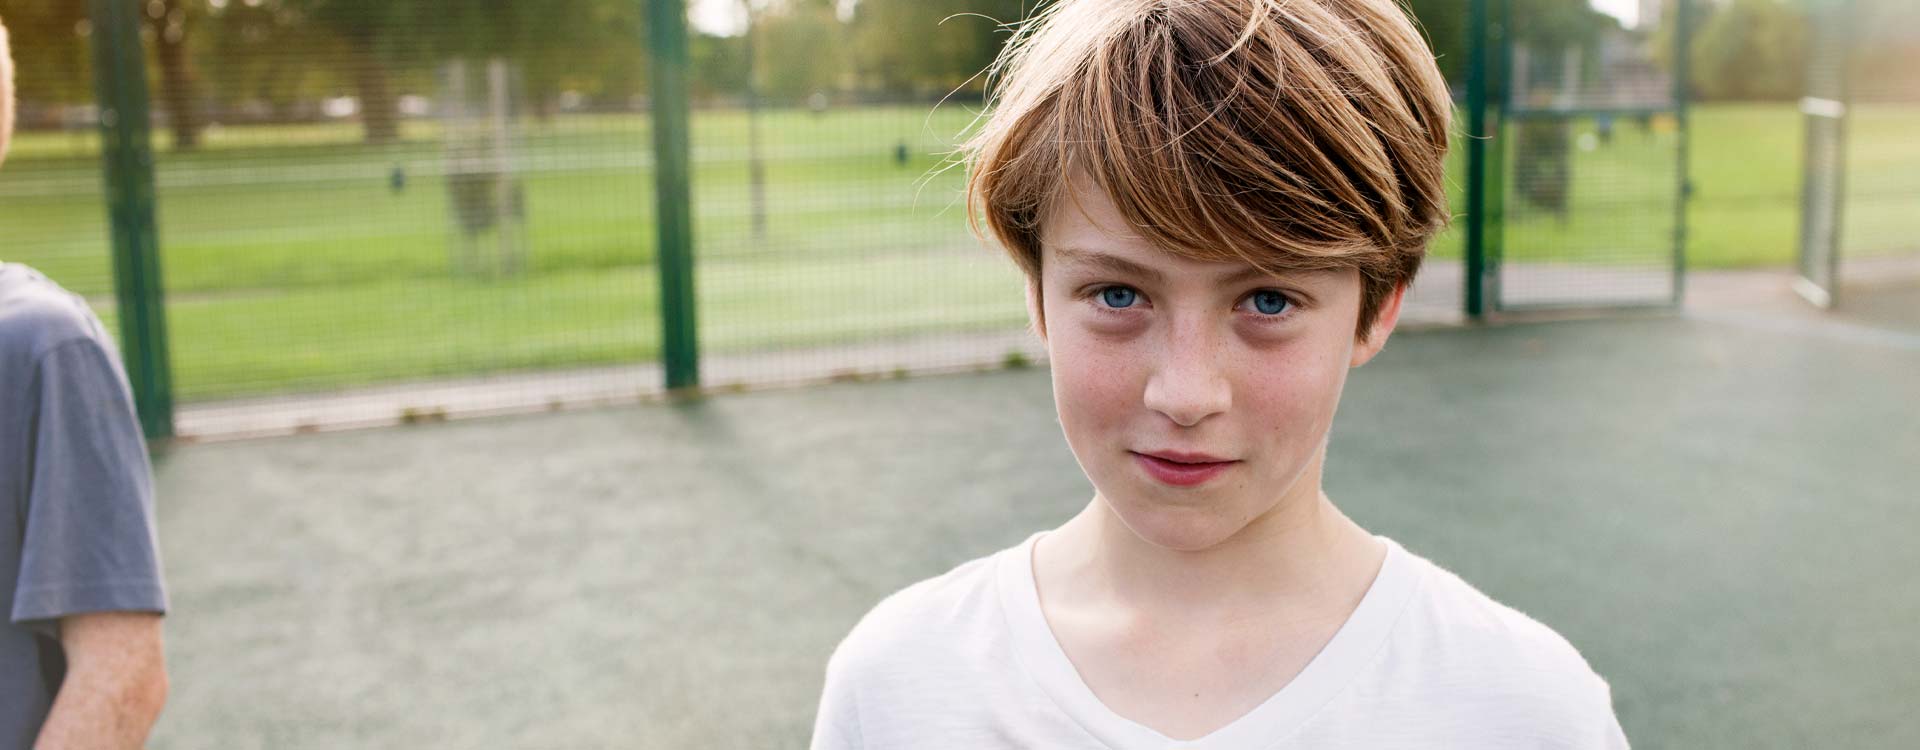 Junge auf Spielplatz blickt in Kamera | Novartis – Klinische Forschung